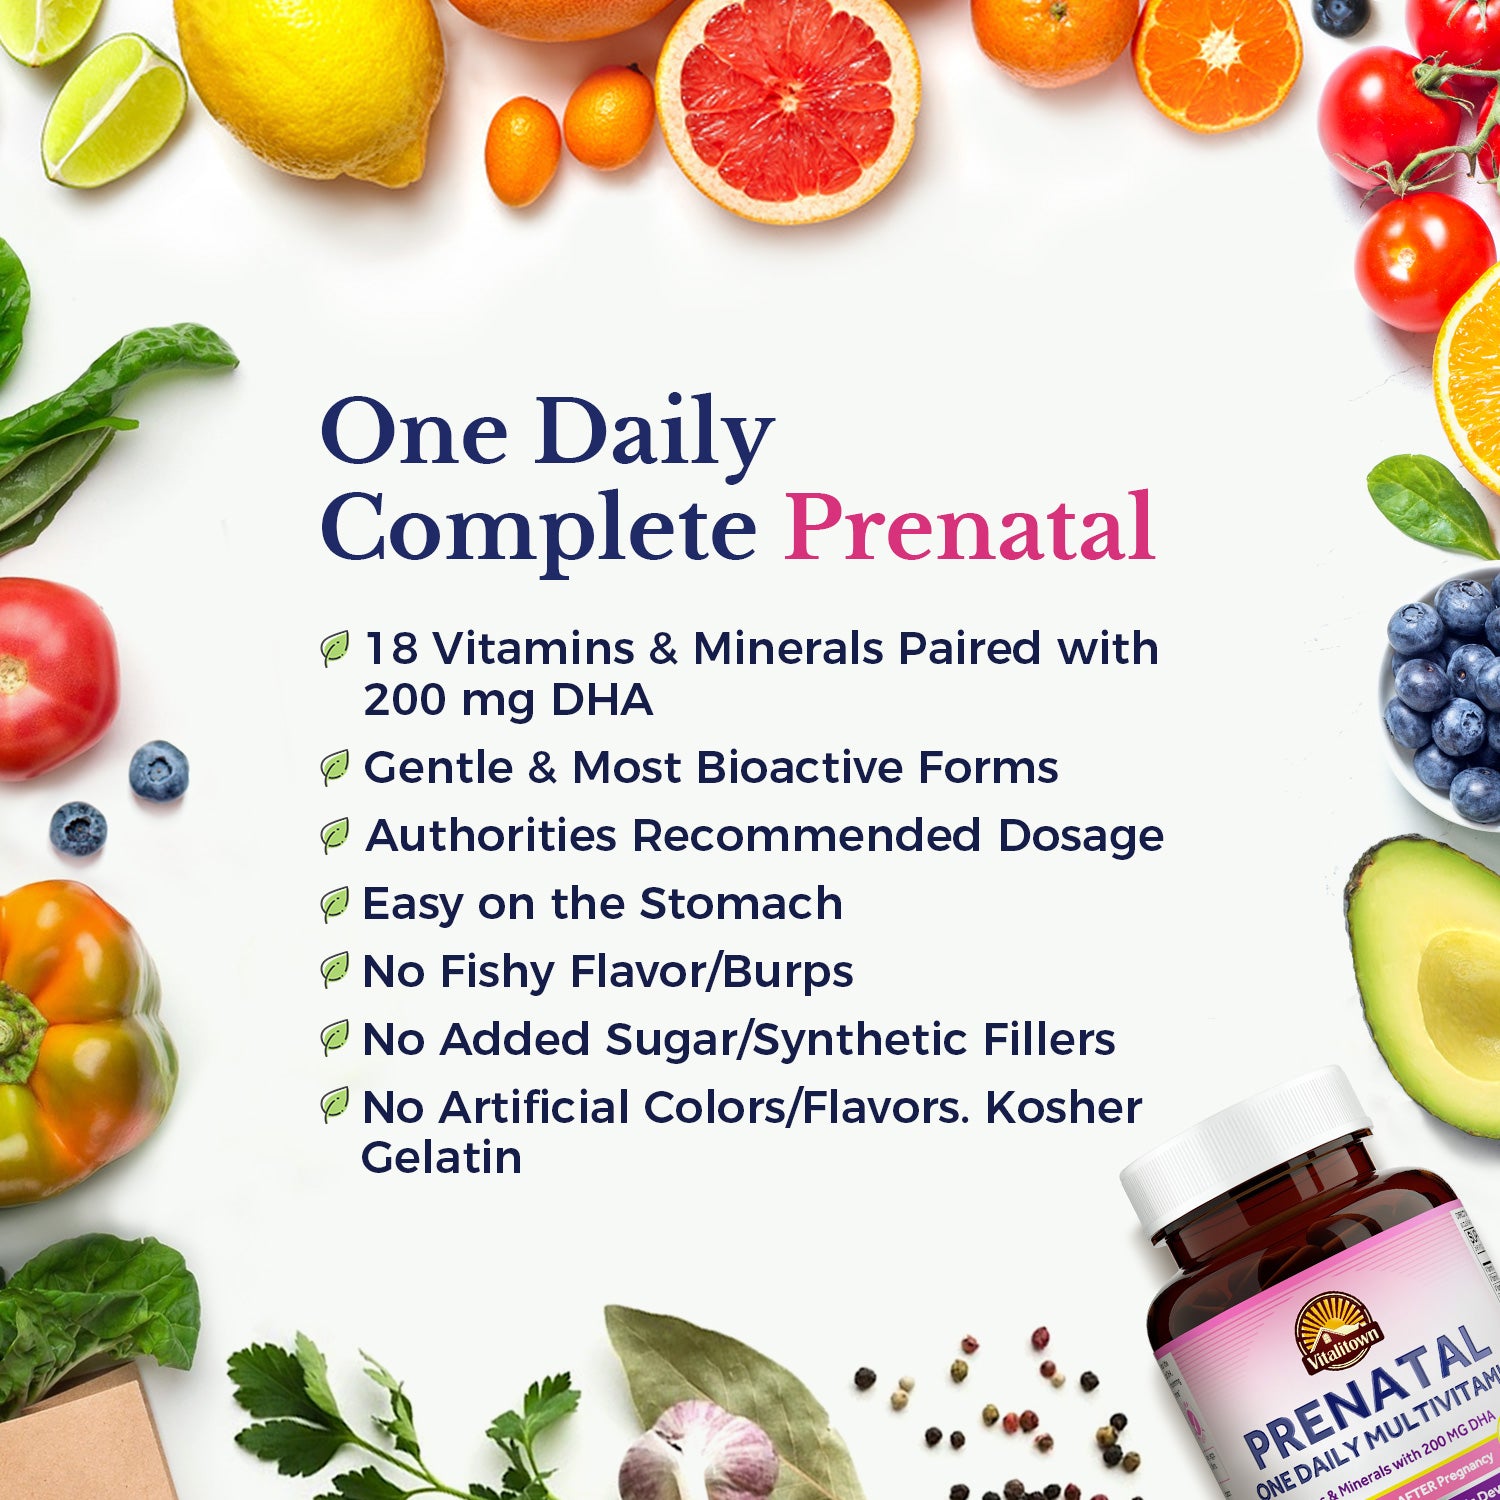 Prenatal One Daily Multivitamin